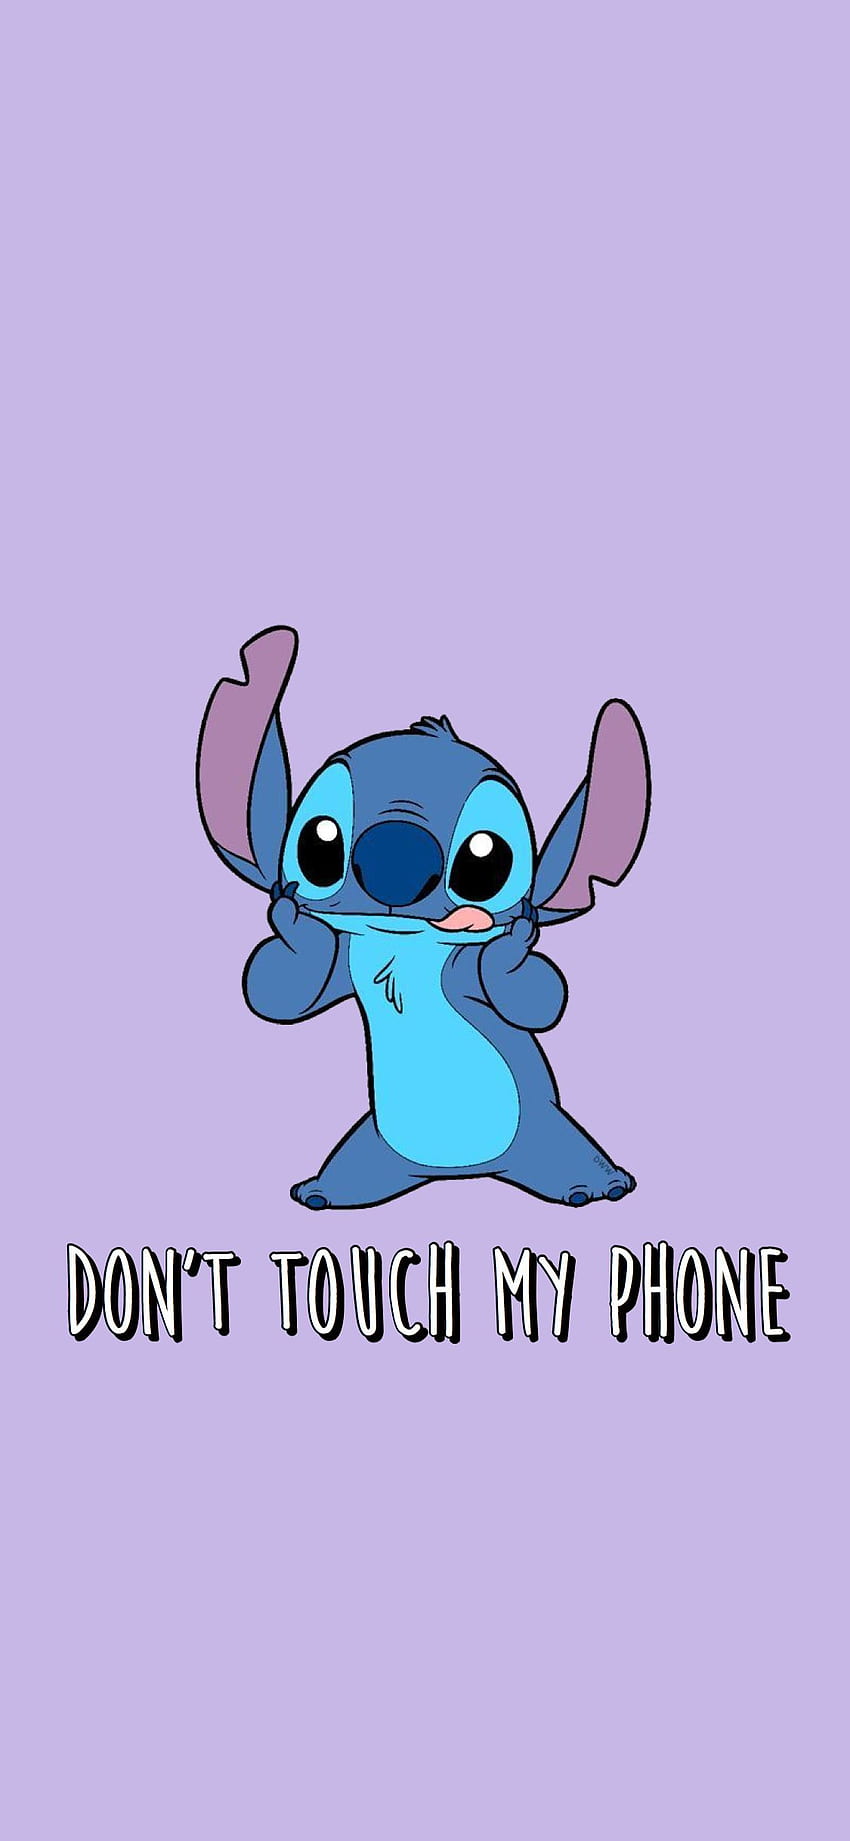 Cute Stitch, azul eléctrico, expresión facial fondo de pantalla del teléfono